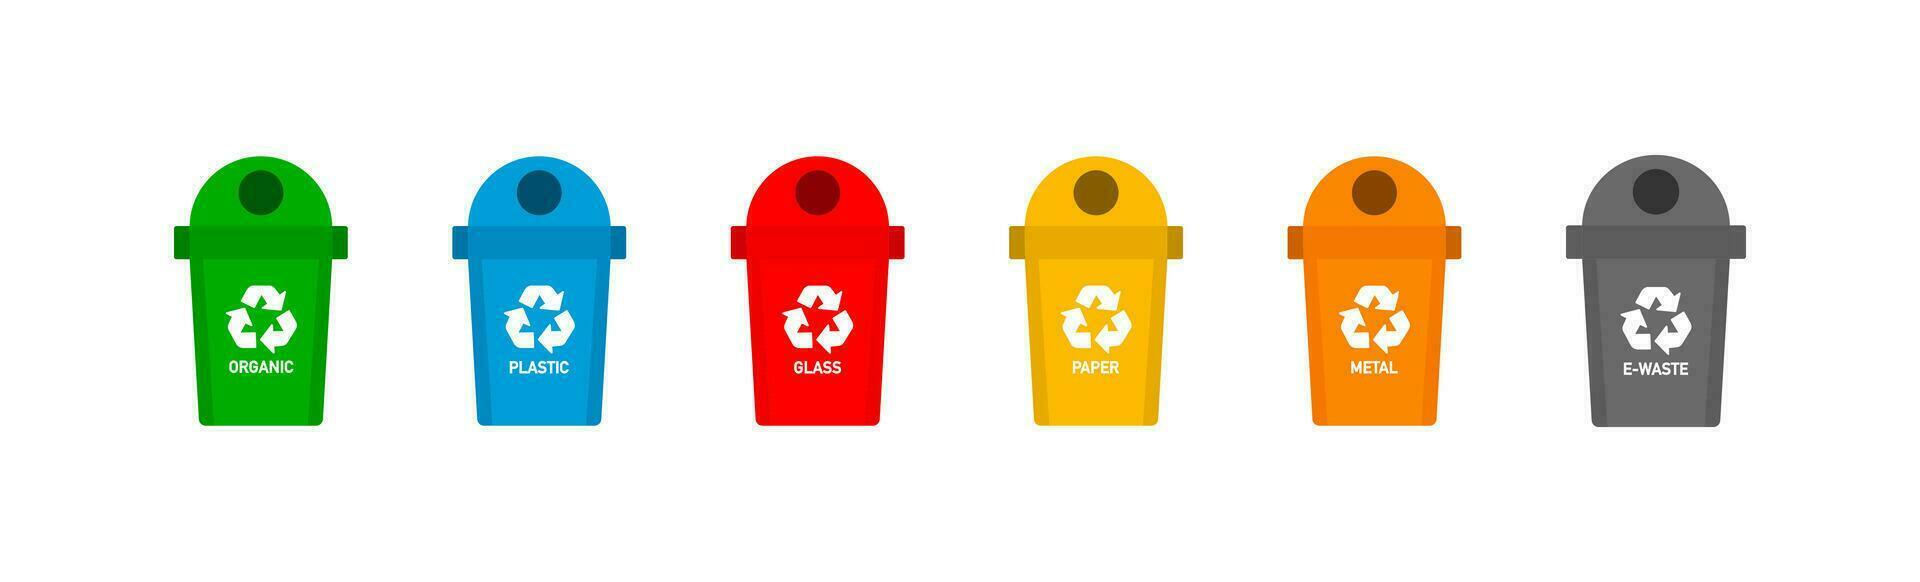 vistoso reciclaje contenedores para residuos separación icono colocar. compartimiento basura vector